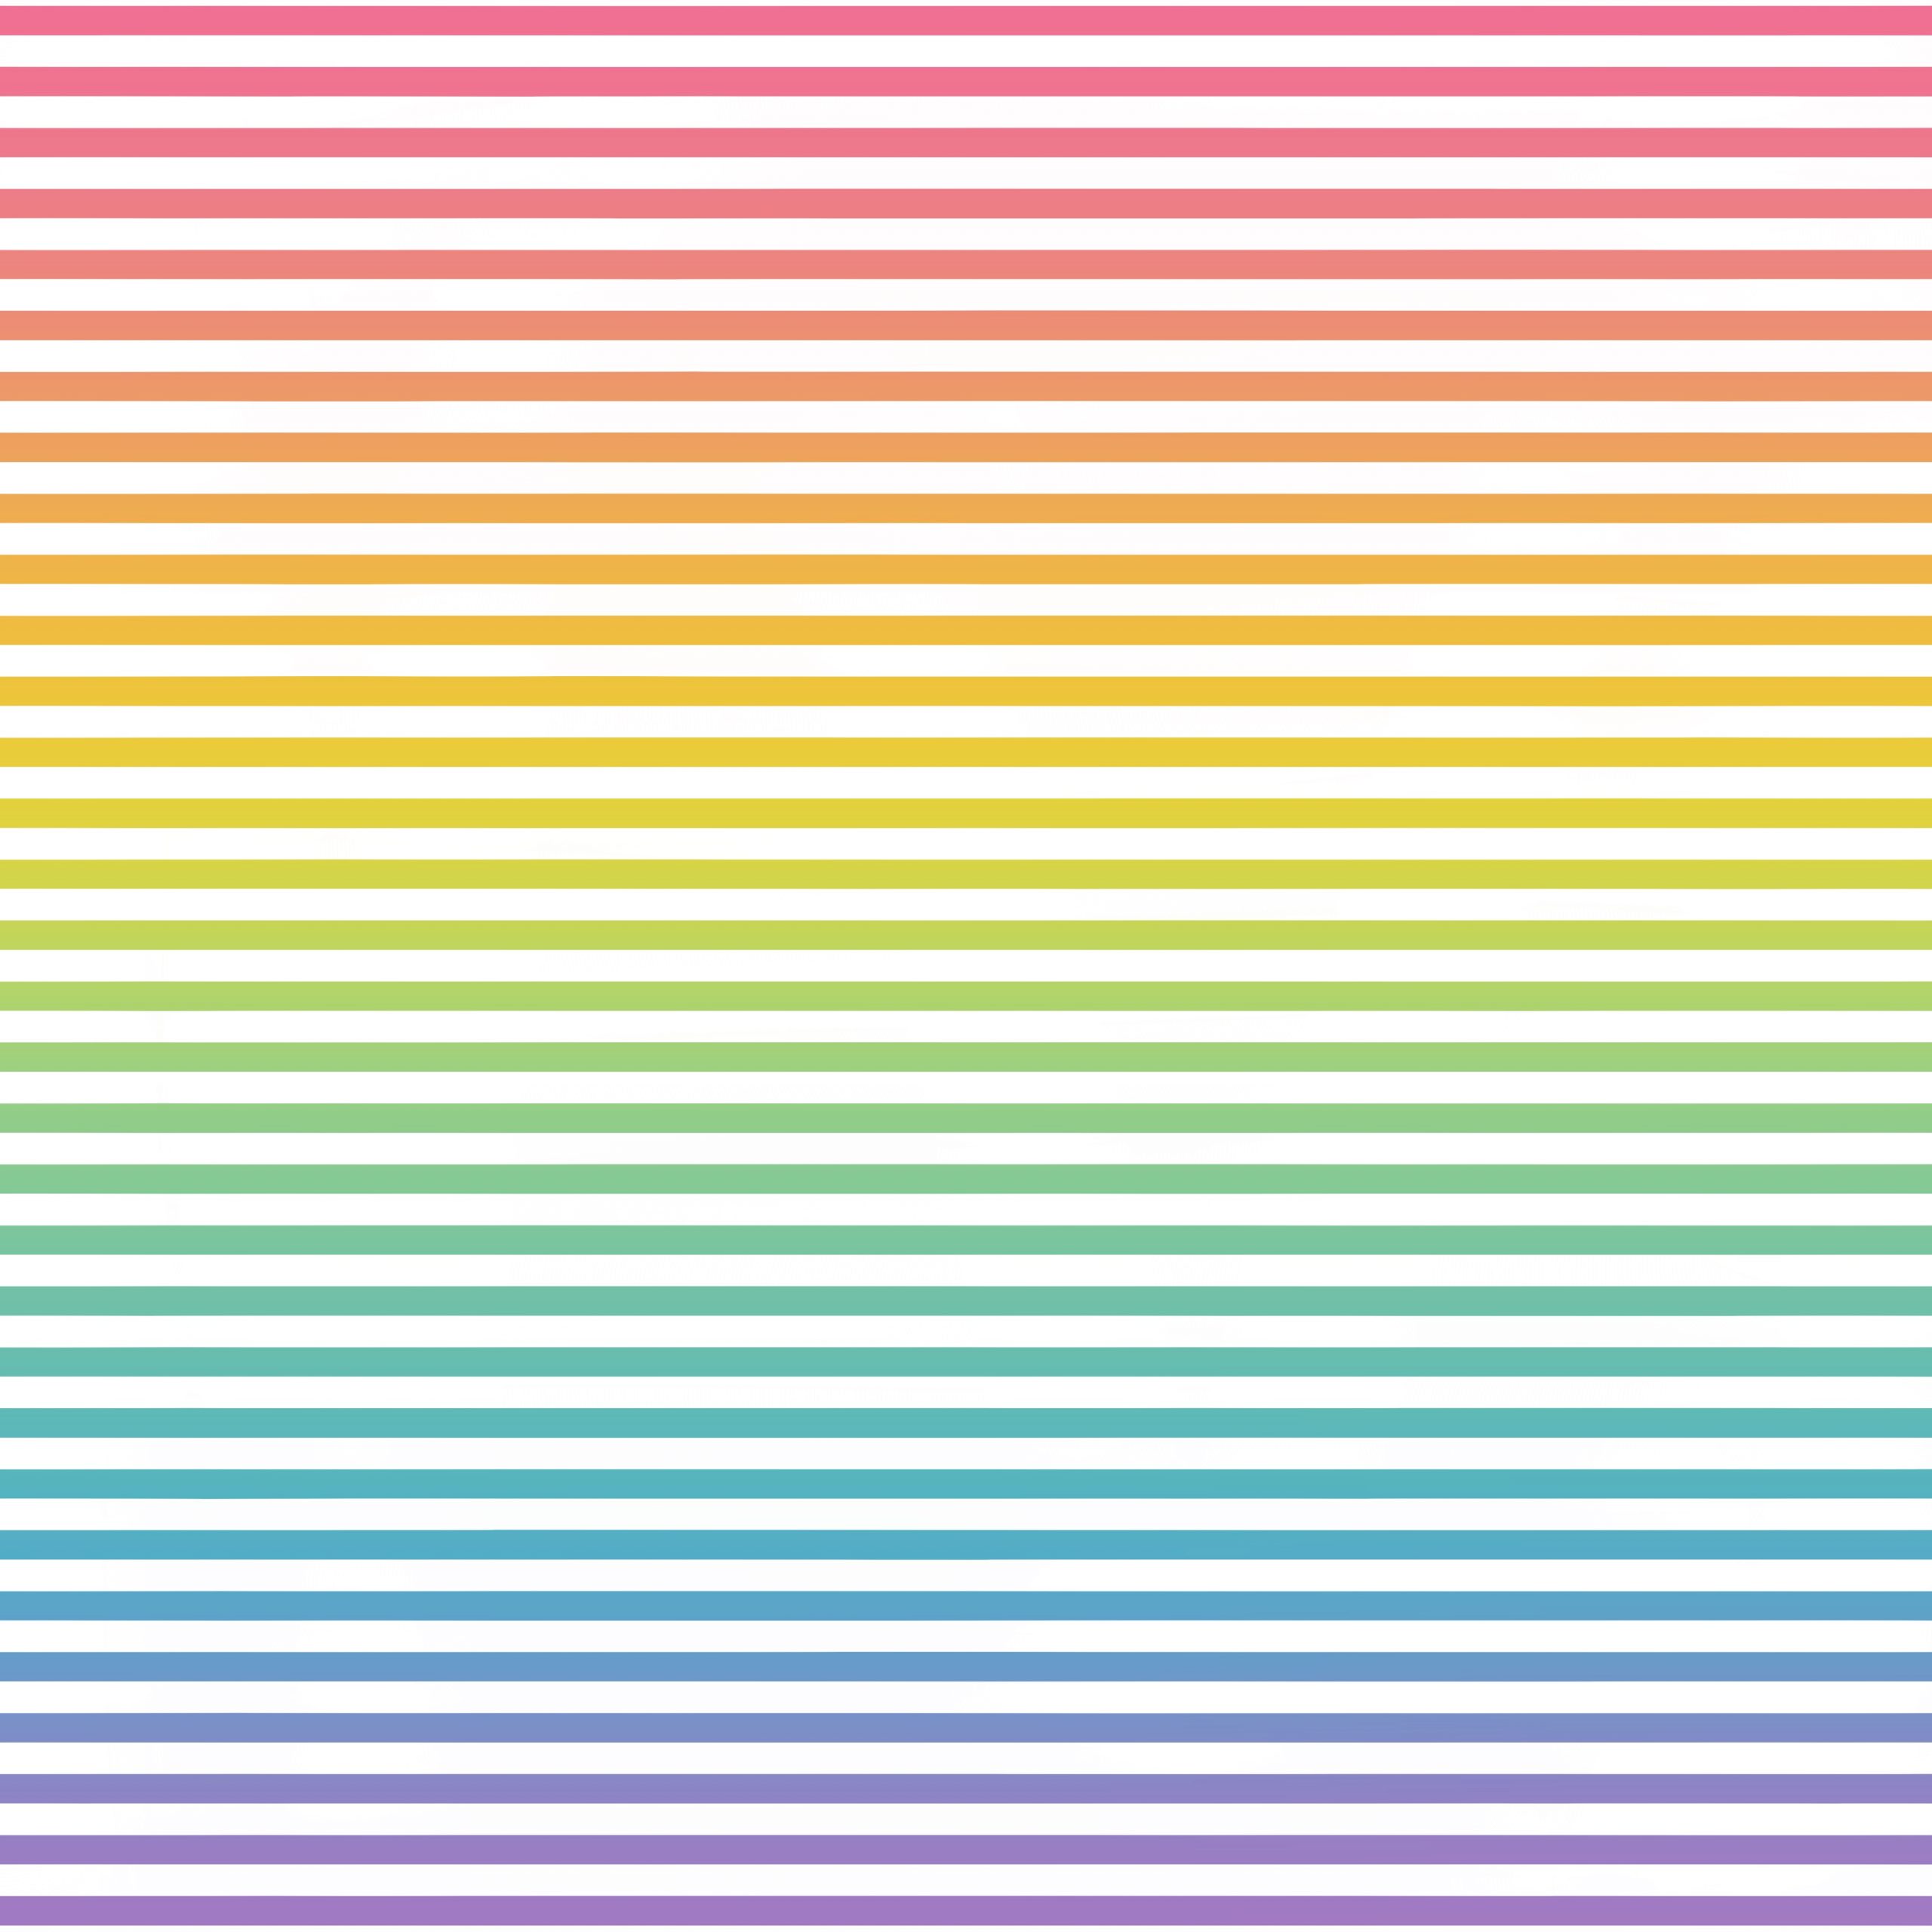 Papel digital para scrapbooking con patrón de líneas horizontales blancas sobre un fondo de colores arcoiris